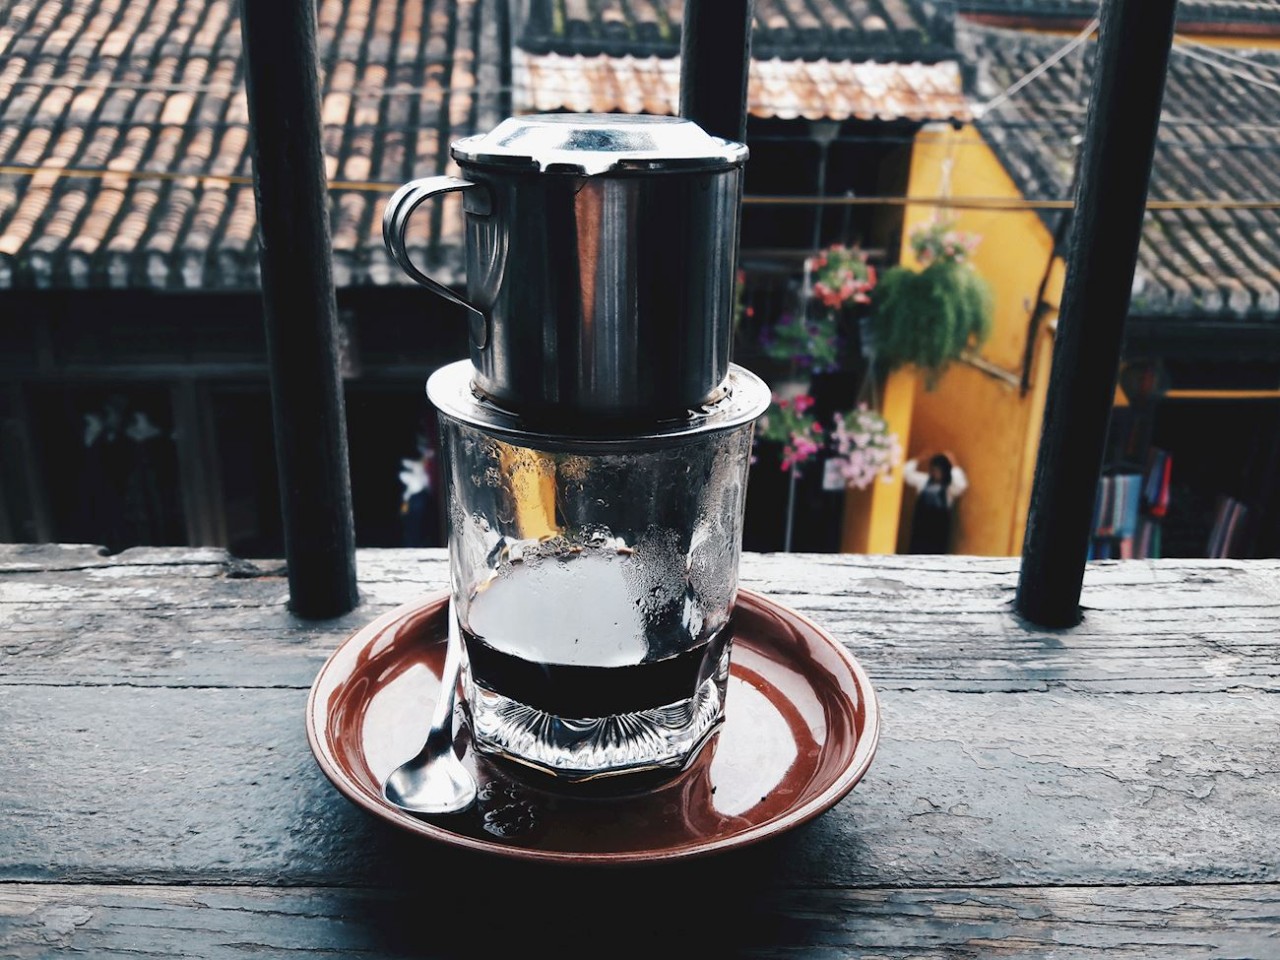 TasteAtlas: Vietnamese Iced Coffee Rated among Best Coffee Worldwide